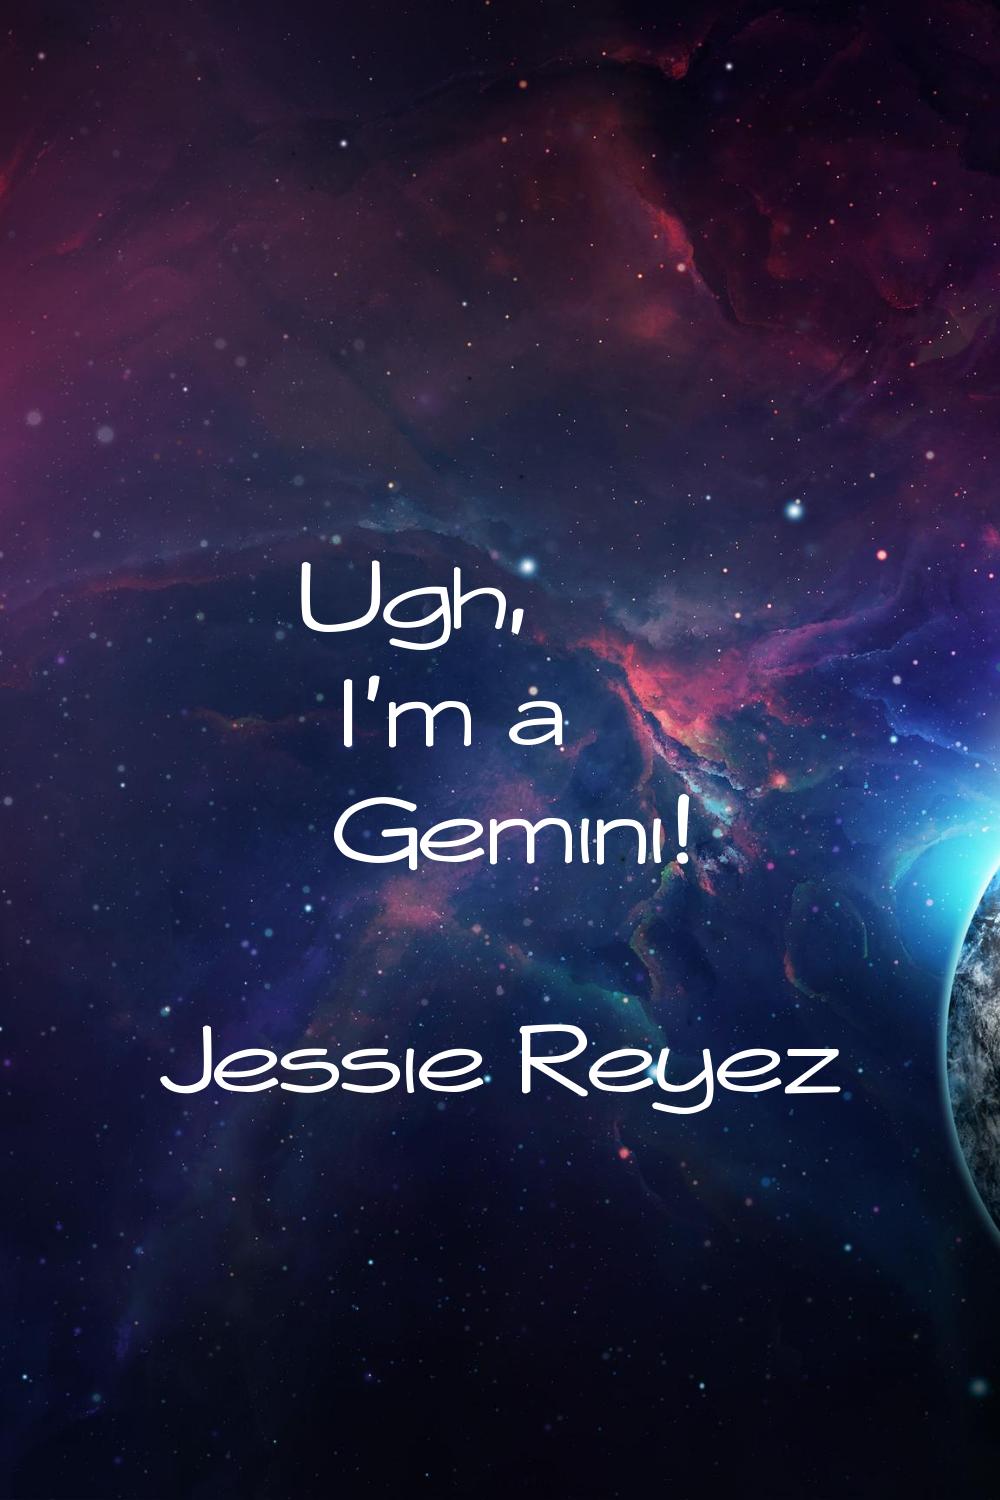 Ugh, I'm a Gemini!